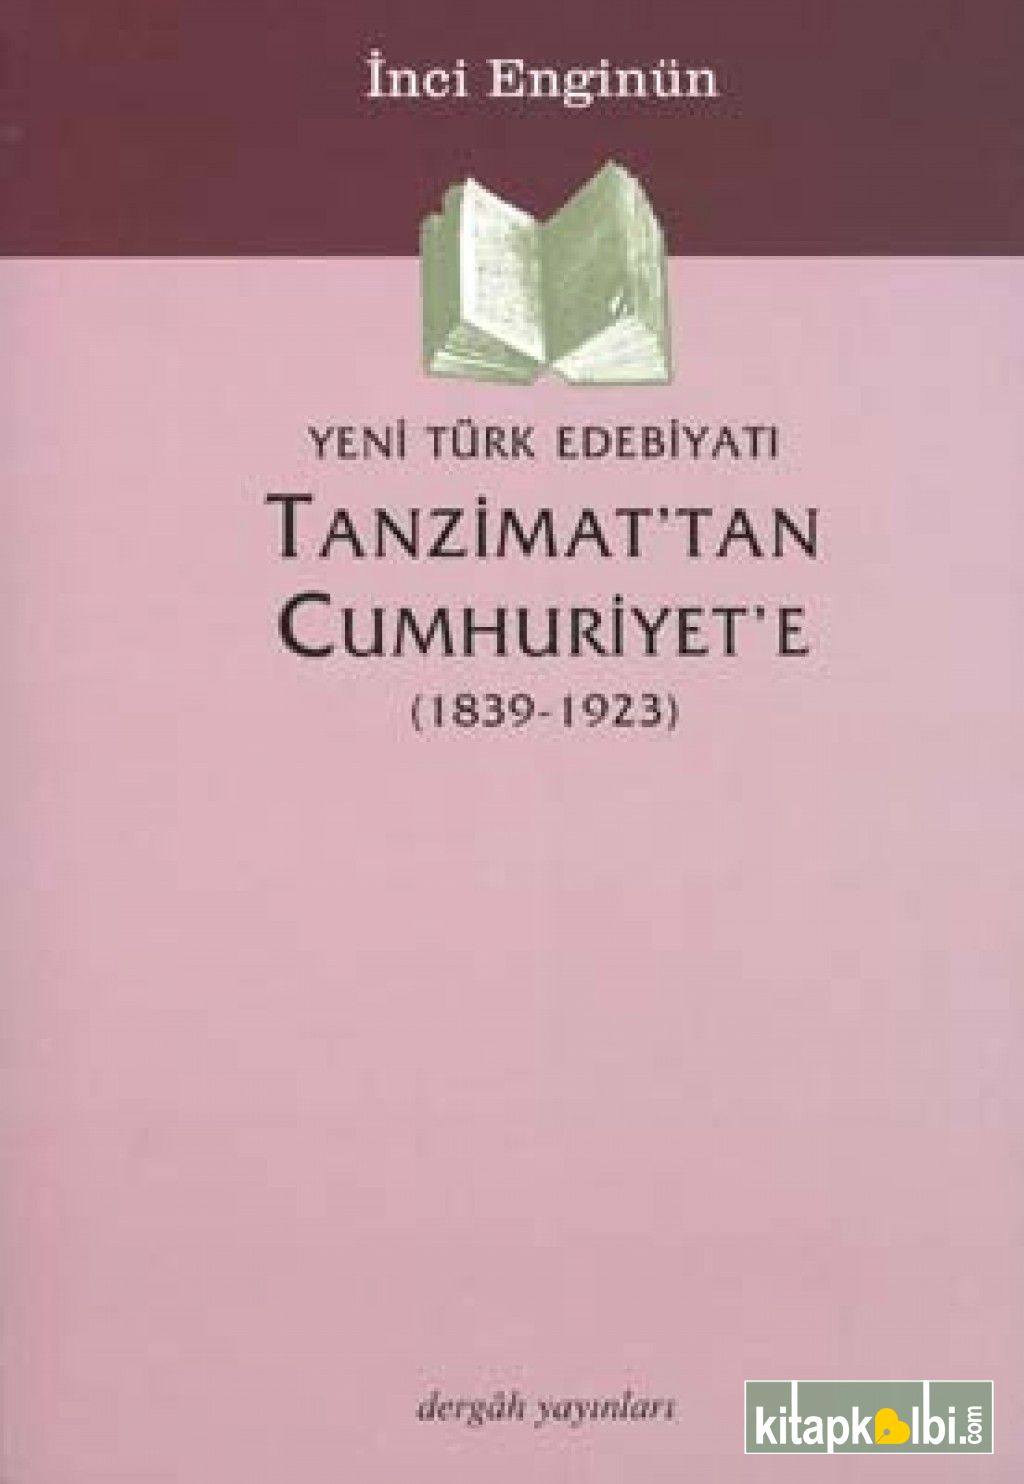 Yeni Türk Edebiyatı Tanzimat'tan Cumhuriyet'e (1839-1923)